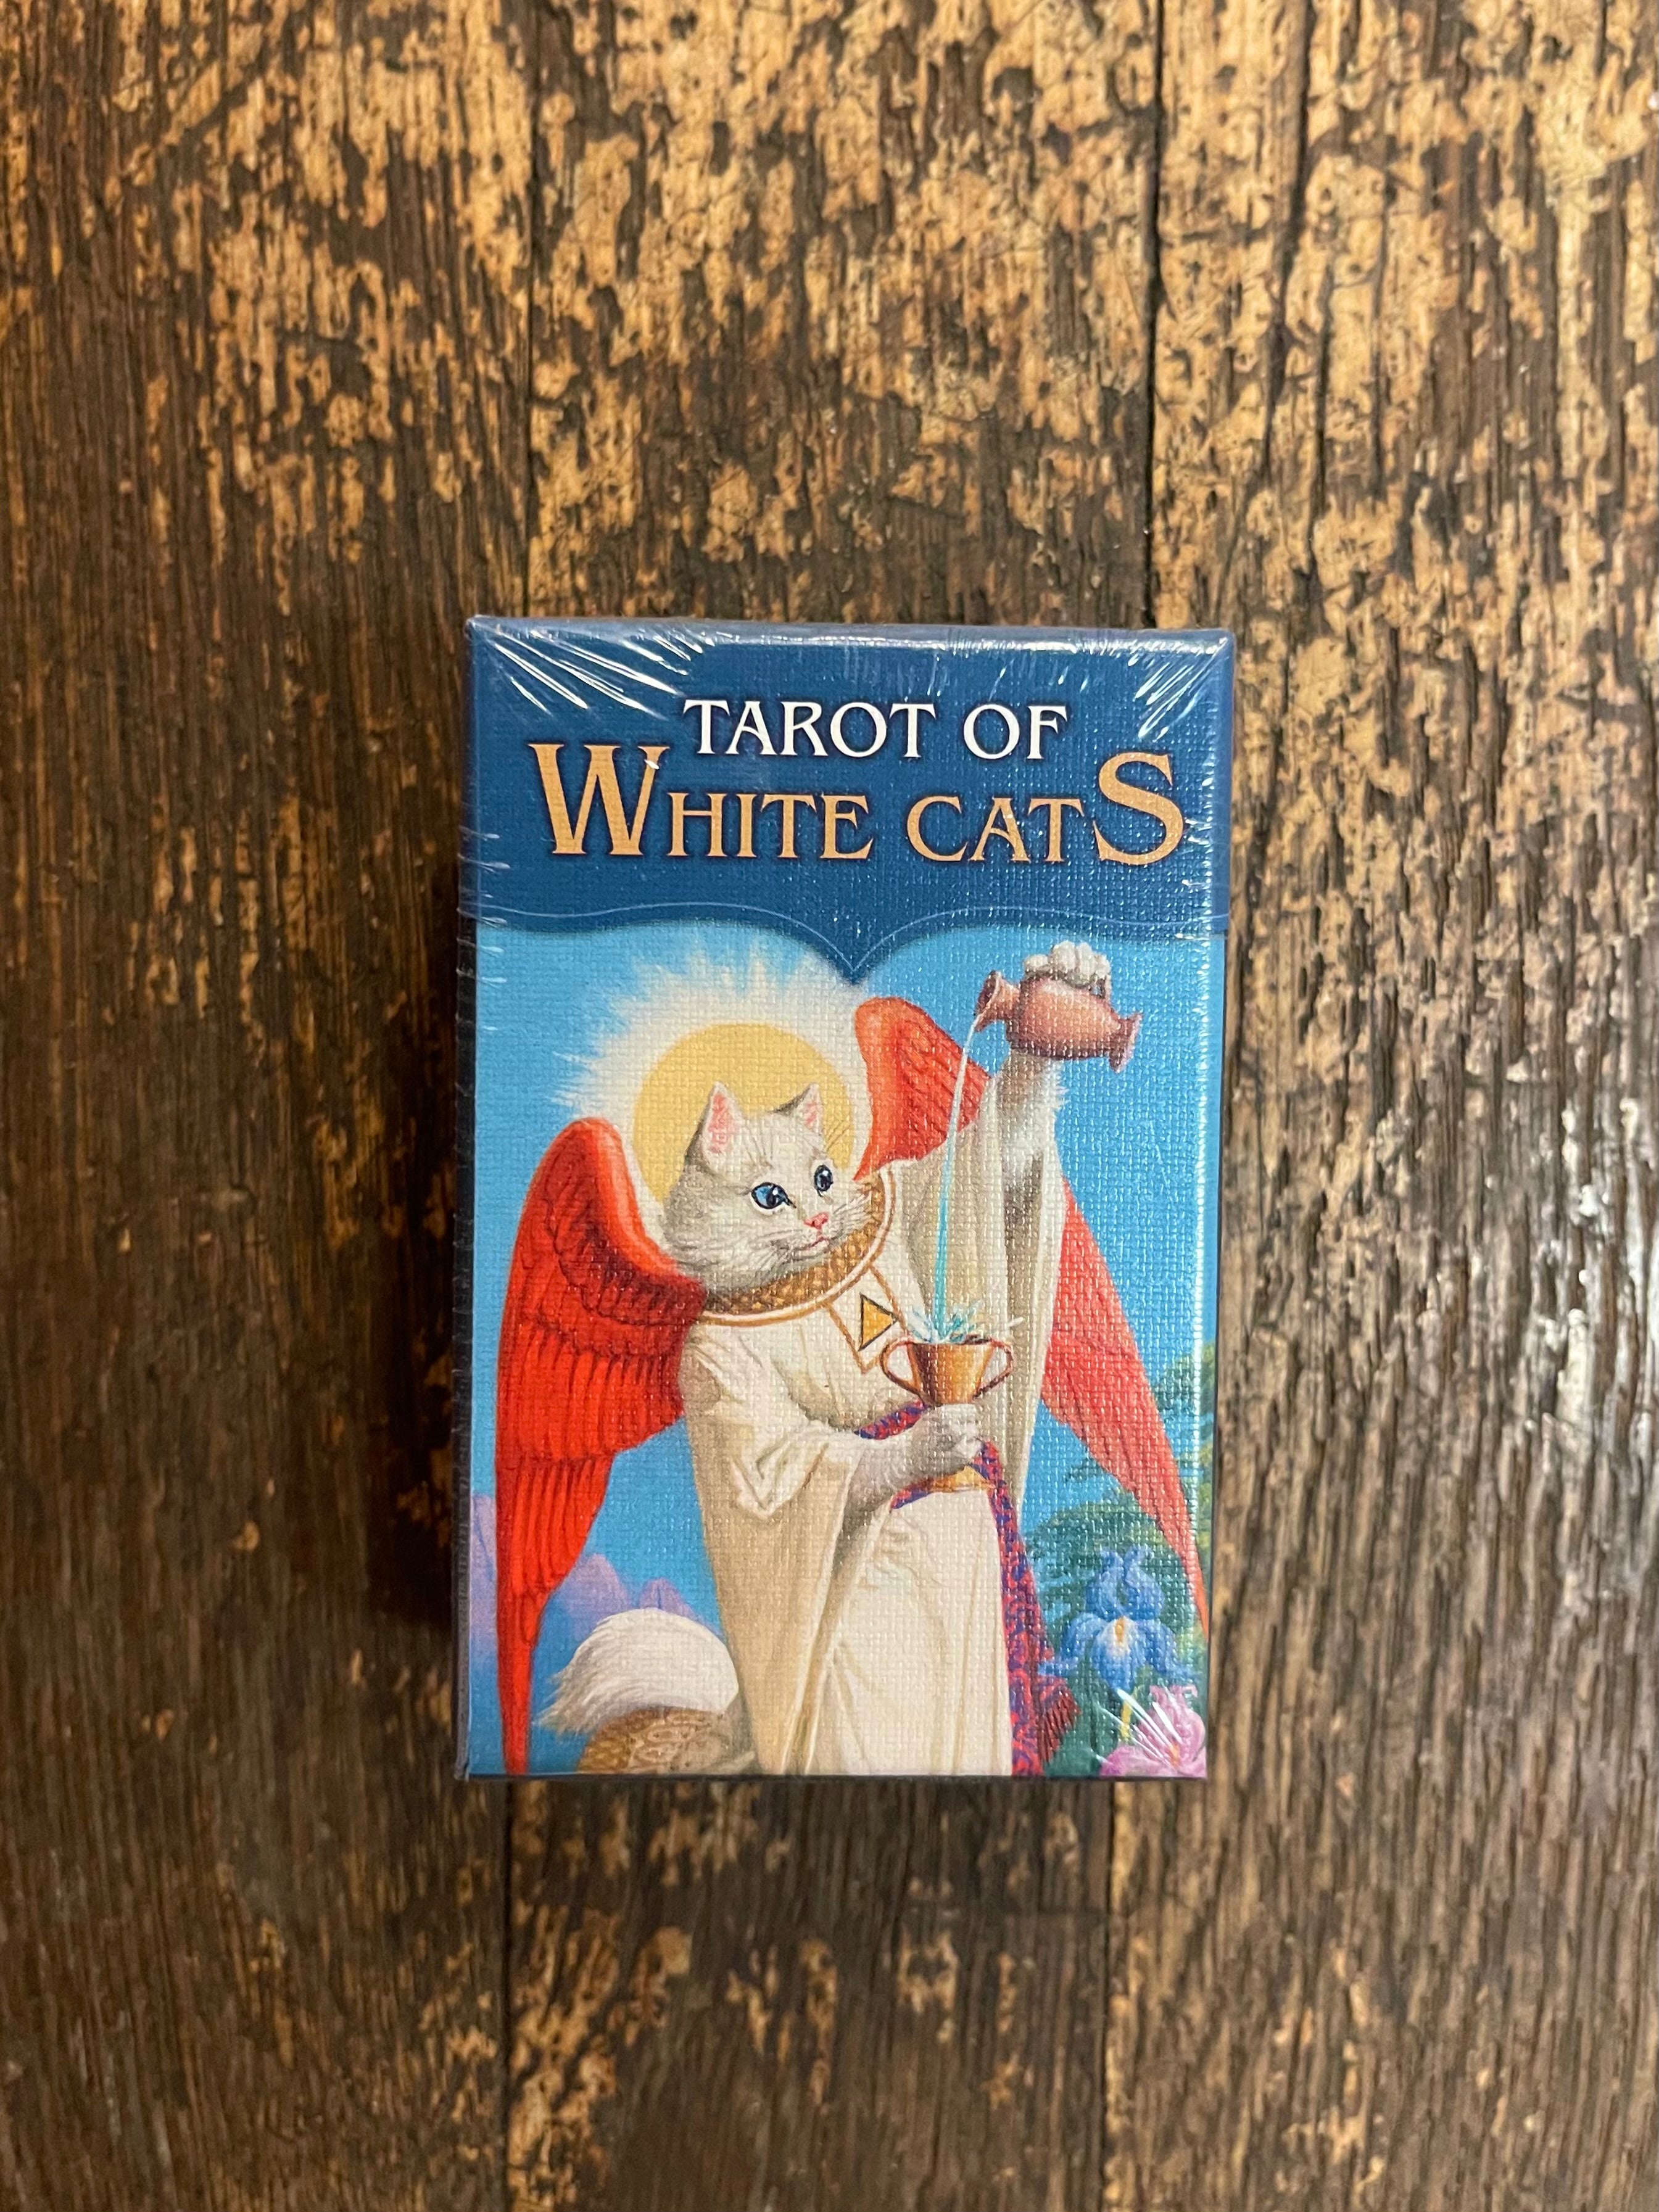 Tarocchi dei Gatti Bianchi • Tarot of White Cats • New Age Center